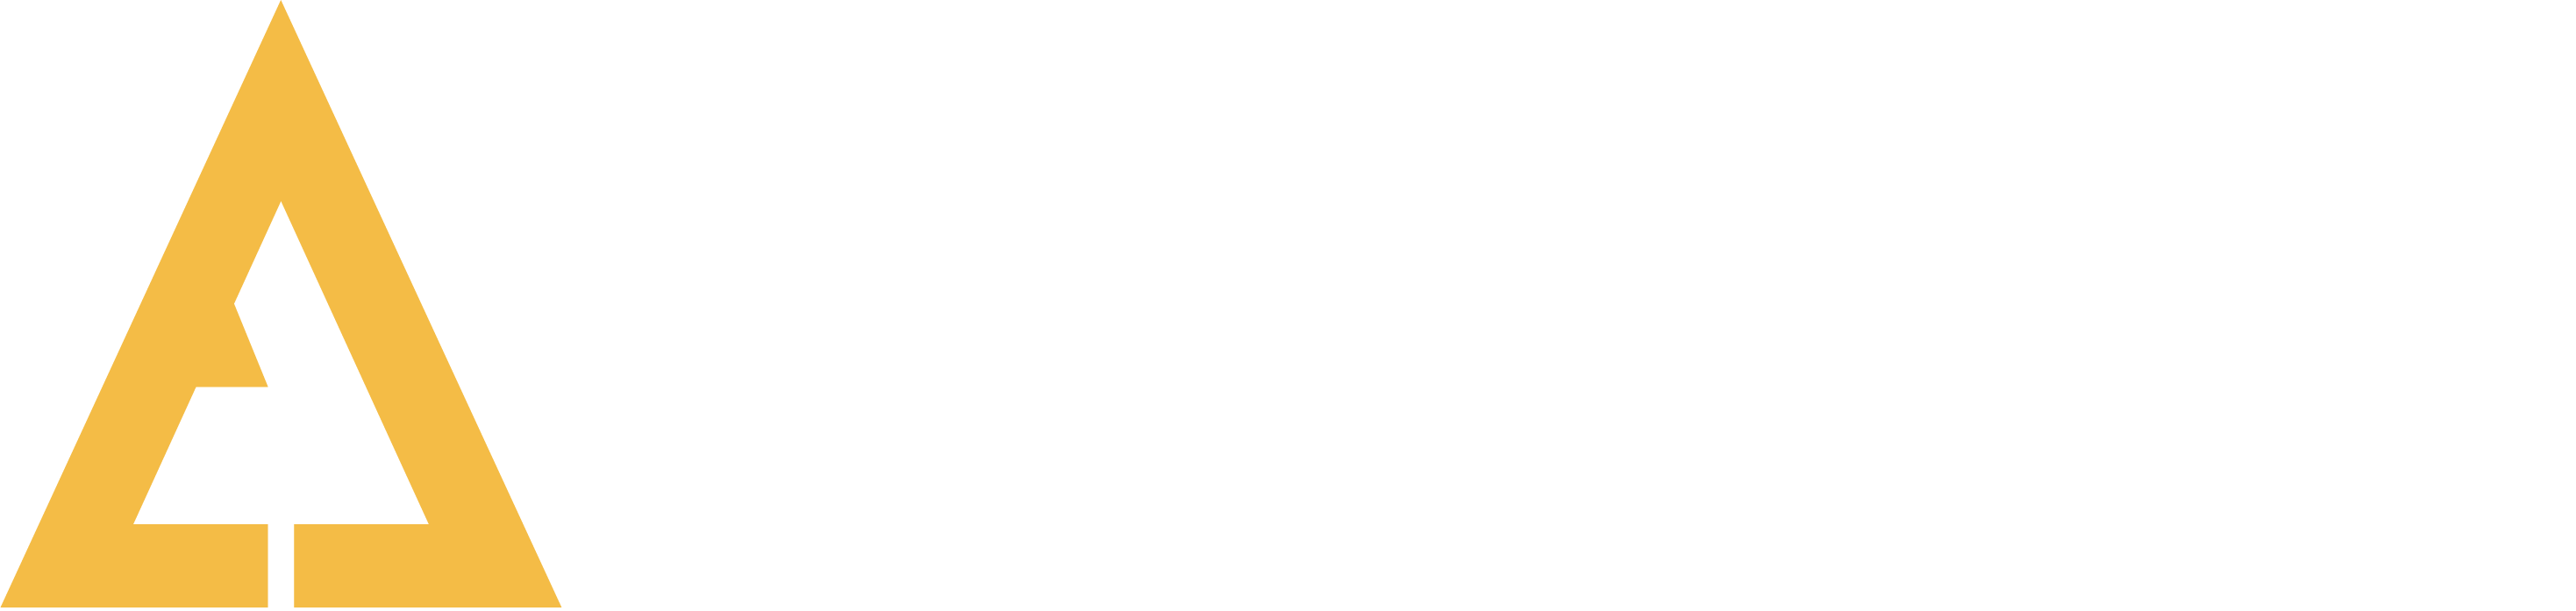 The Treeline Conservancy